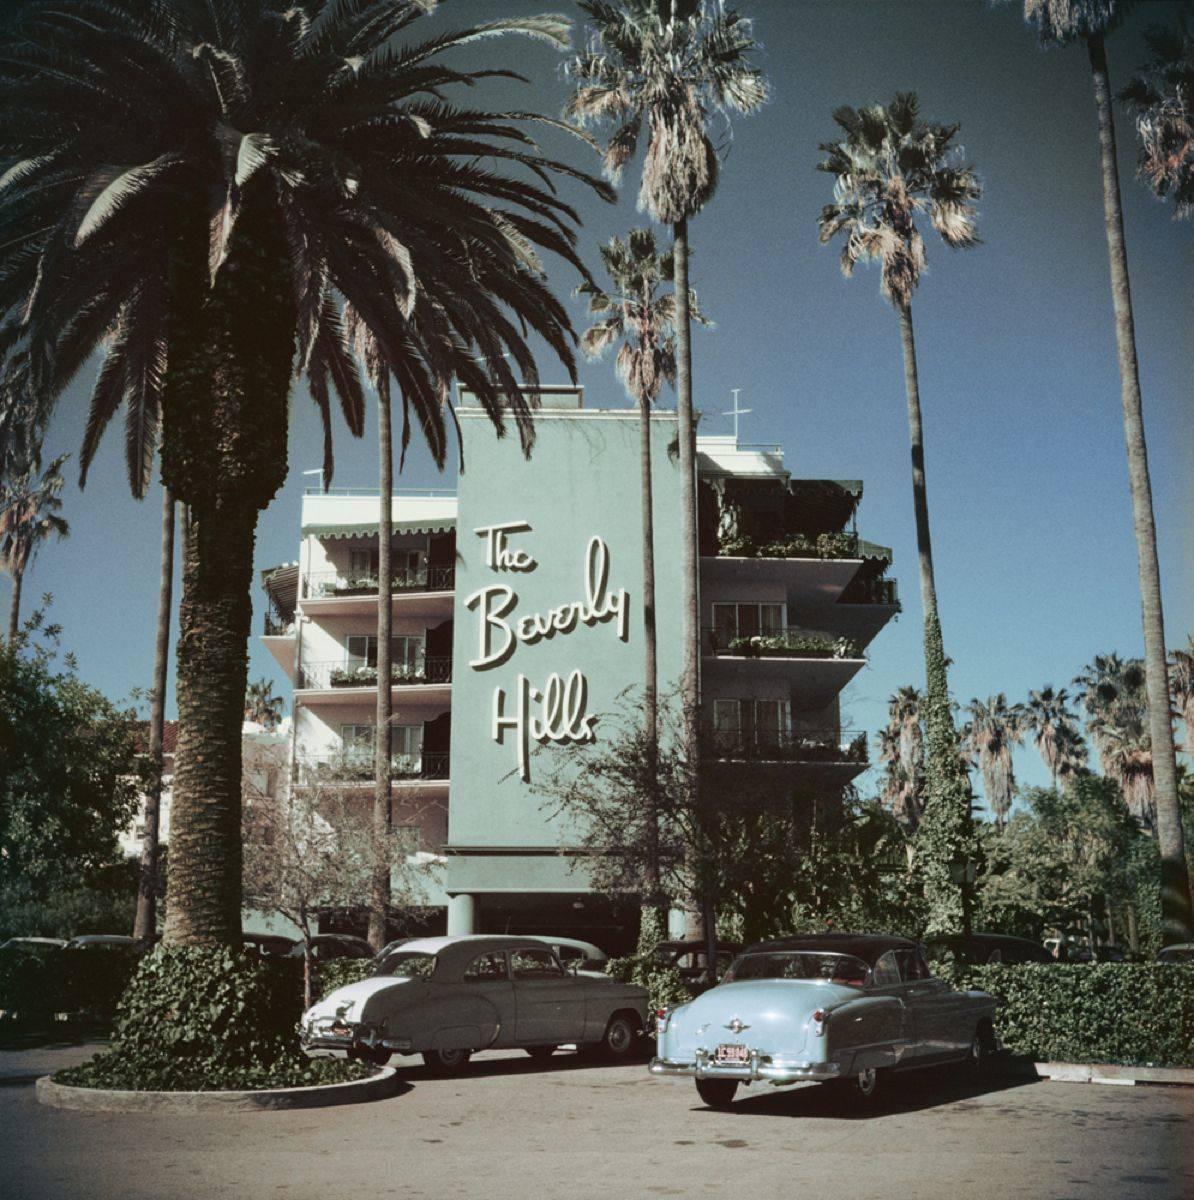 Beverly Hills Hotel" 1957   Edition limitée Slim Aarons Estate

De belles voitures des années 1950 garées devant l'emblématique hôtel Beverly Hills sur Sunset Boulevard en Californie, 1957. 

Typiquement "Slim", cette photographie incarne l'élégance